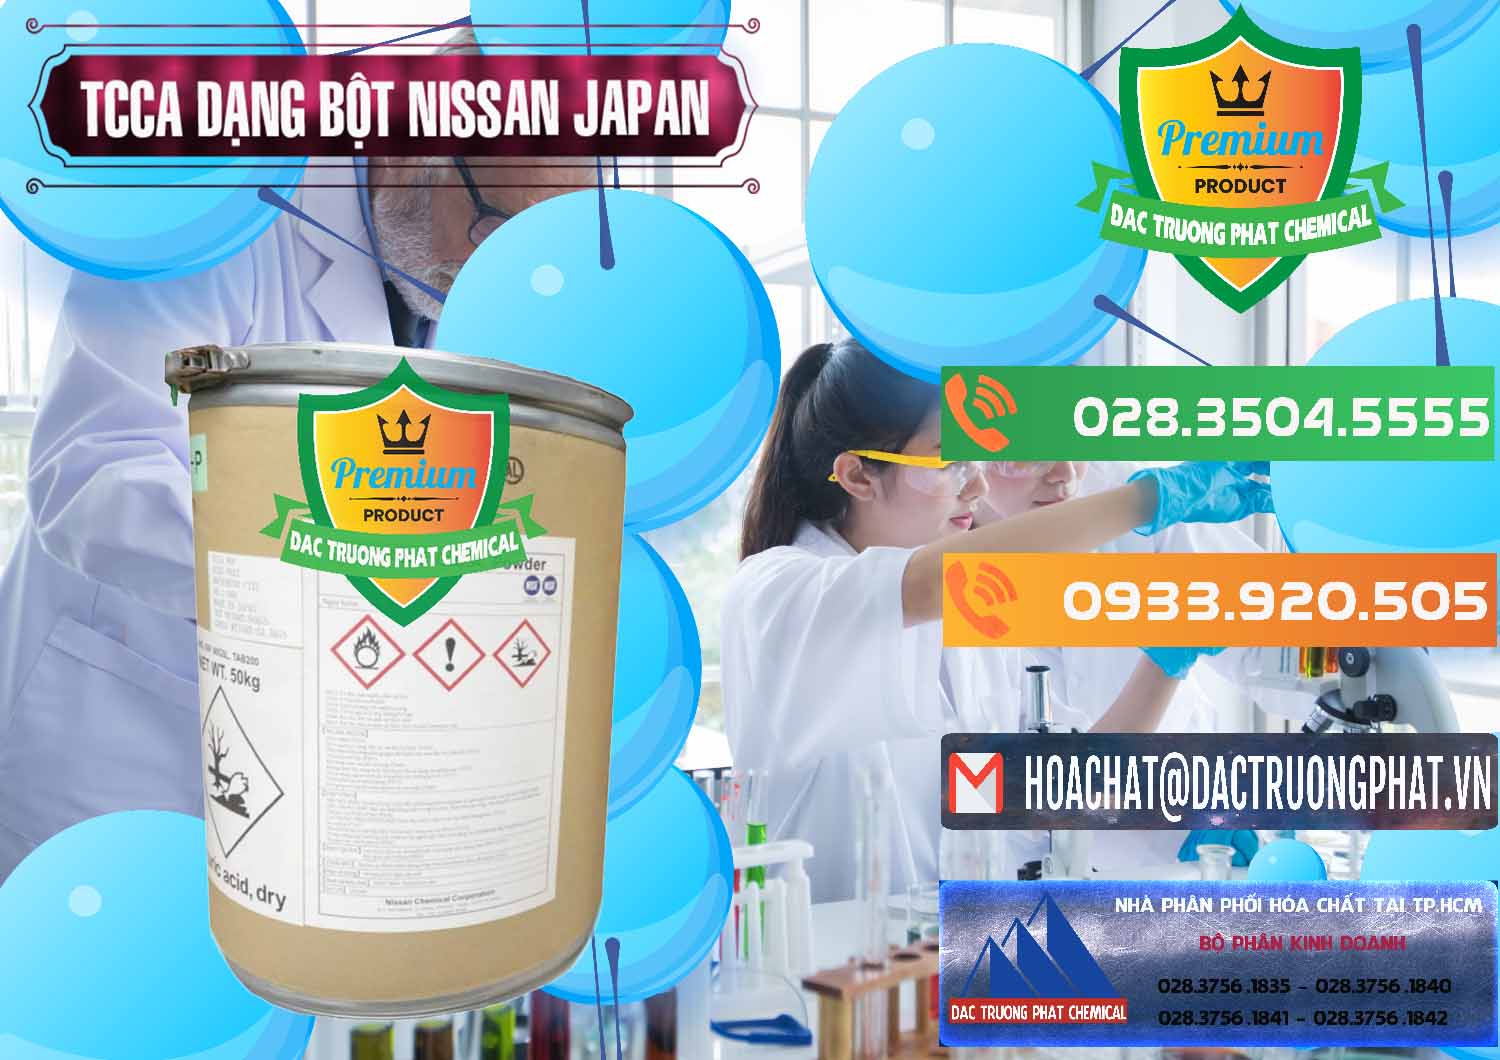 Cty chuyên bán ( phân phối ) TCCA - Acid Trichloroisocyanuric 90% Dạng Bột Nissan Nhật Bản Japan - 0375 - Cty chuyên nhập khẩu & cung cấp hóa chất tại TP.HCM - hoachatxulynuoc.com.vn